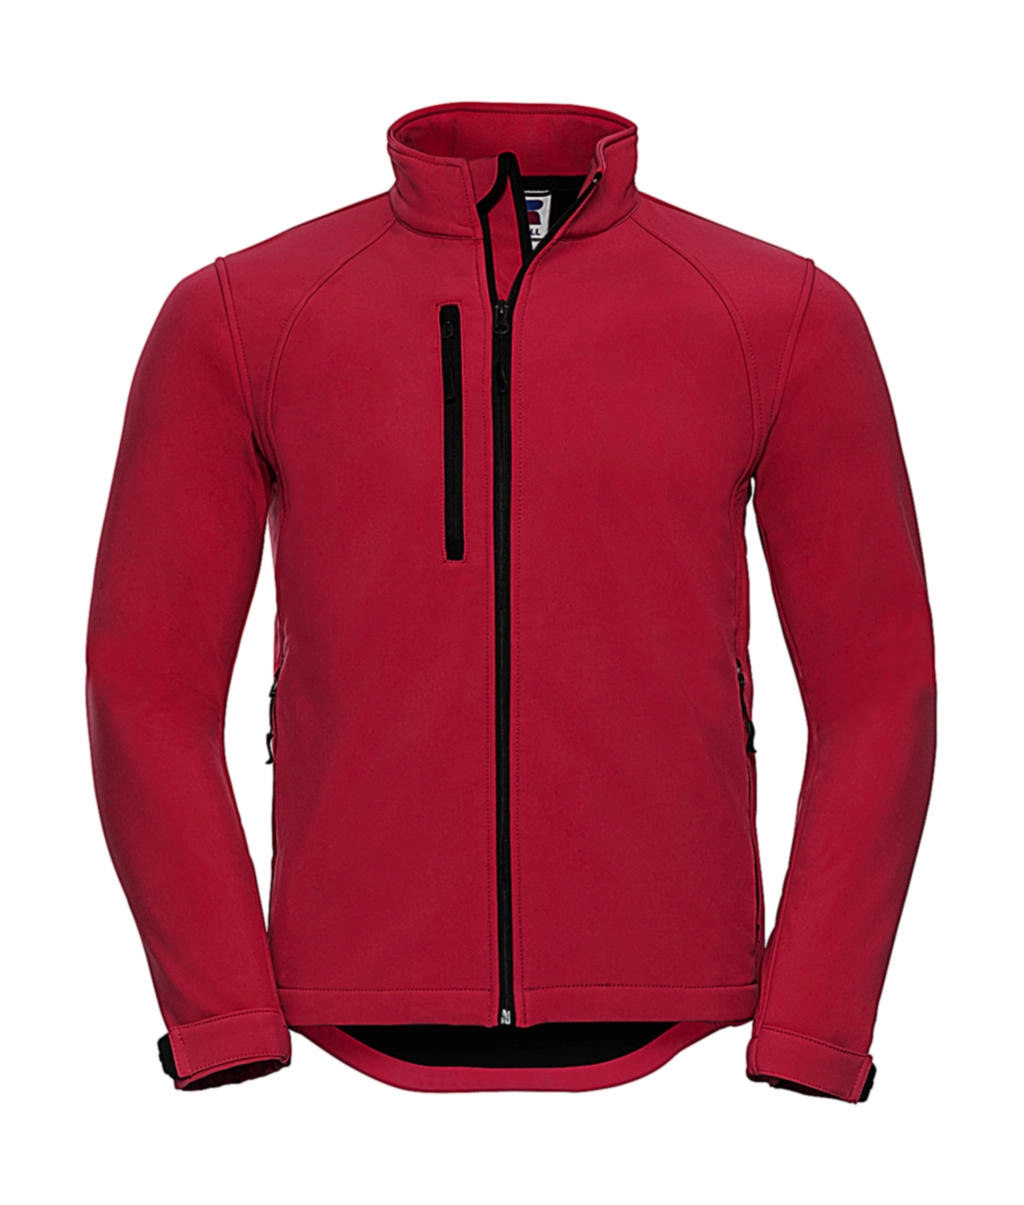 Softshell Jacket zum Besticken und Bedrucken in der Farbe Classic Red mit Ihren Logo, Schriftzug oder Motiv.